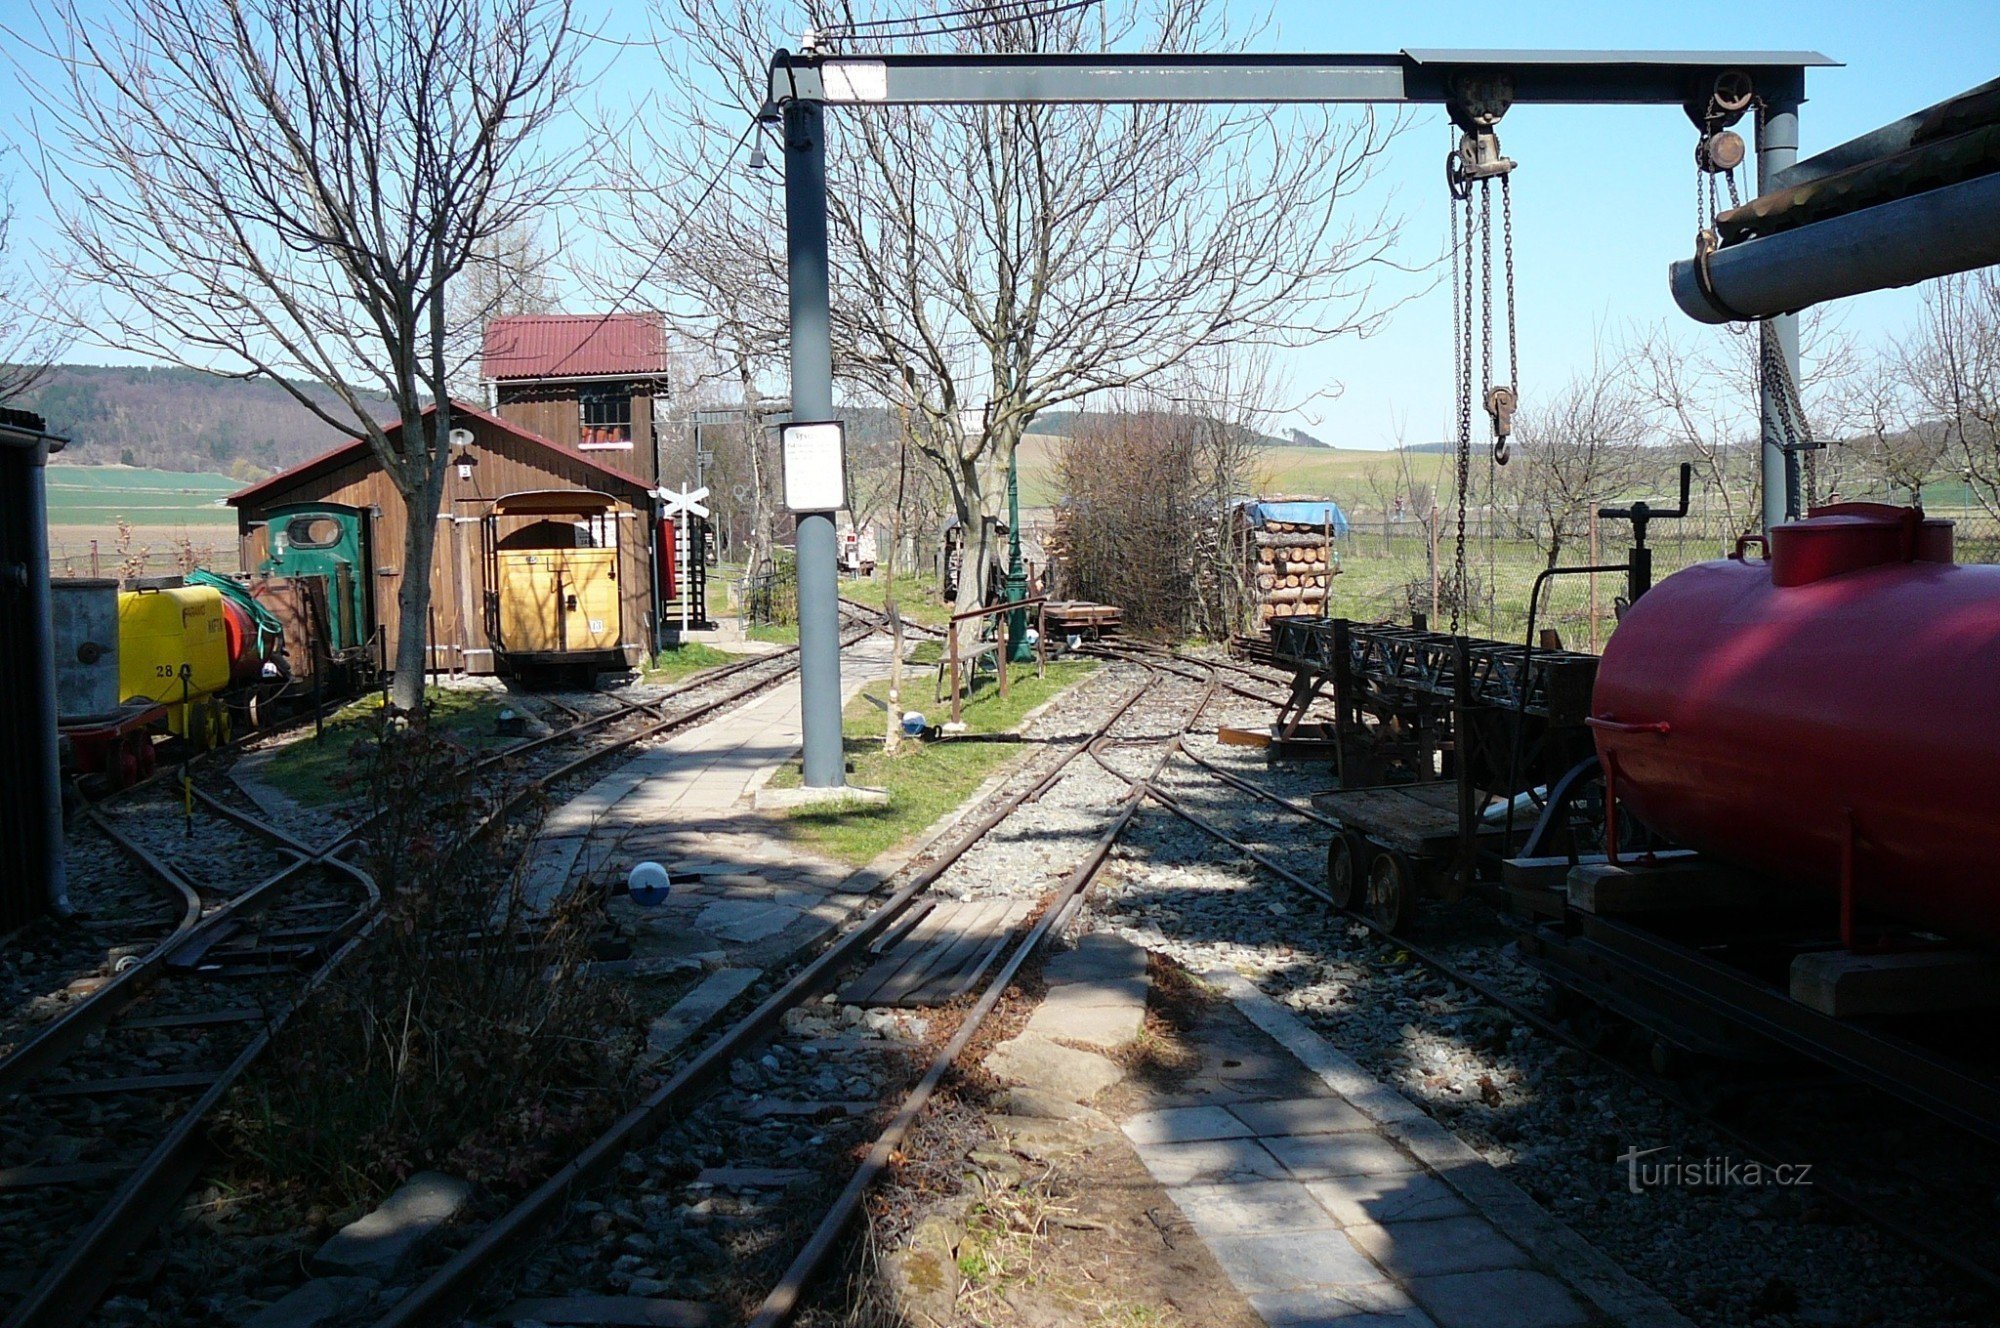 ドラショフ庭園鉄道